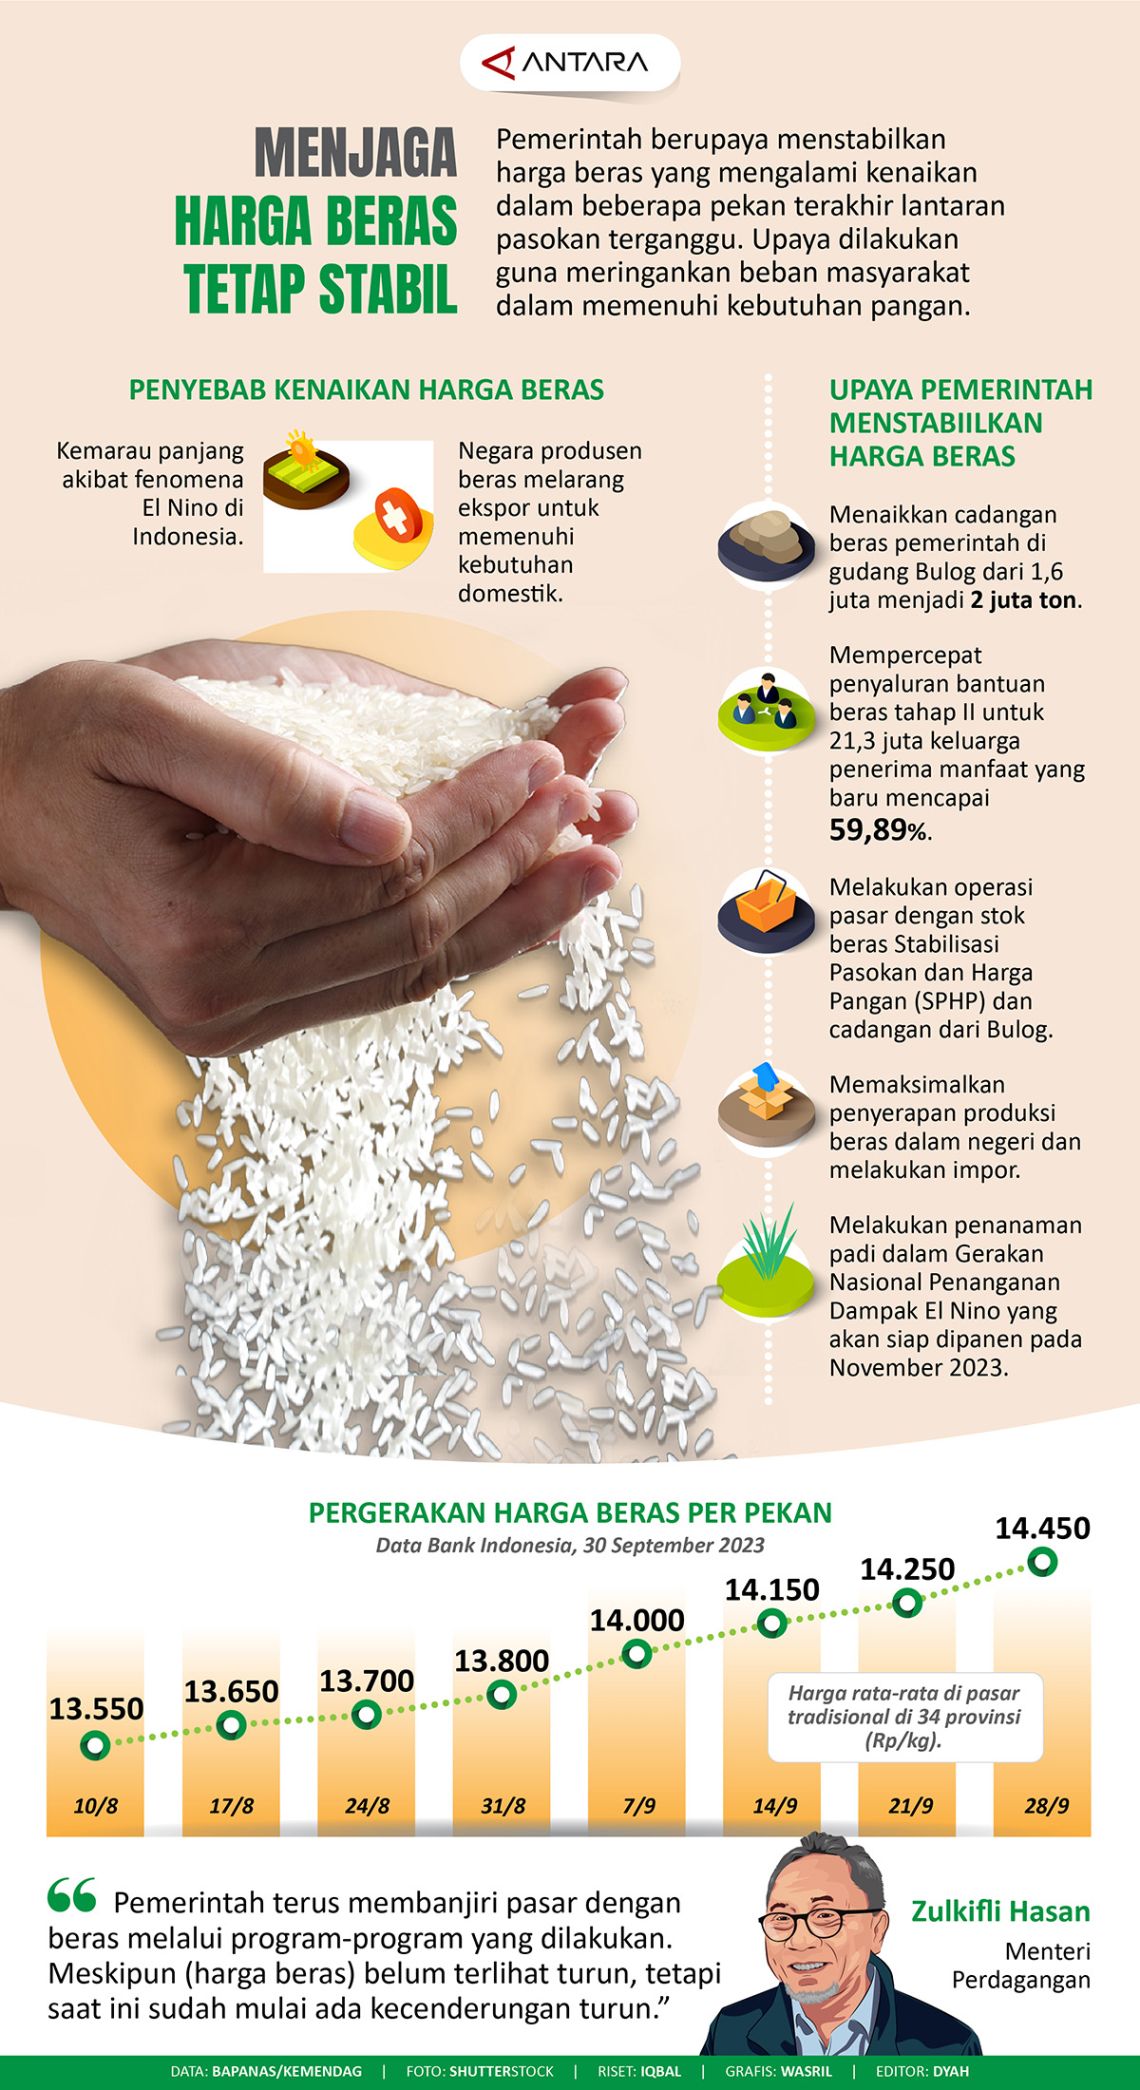 Menjaga harga beras tetap stabil